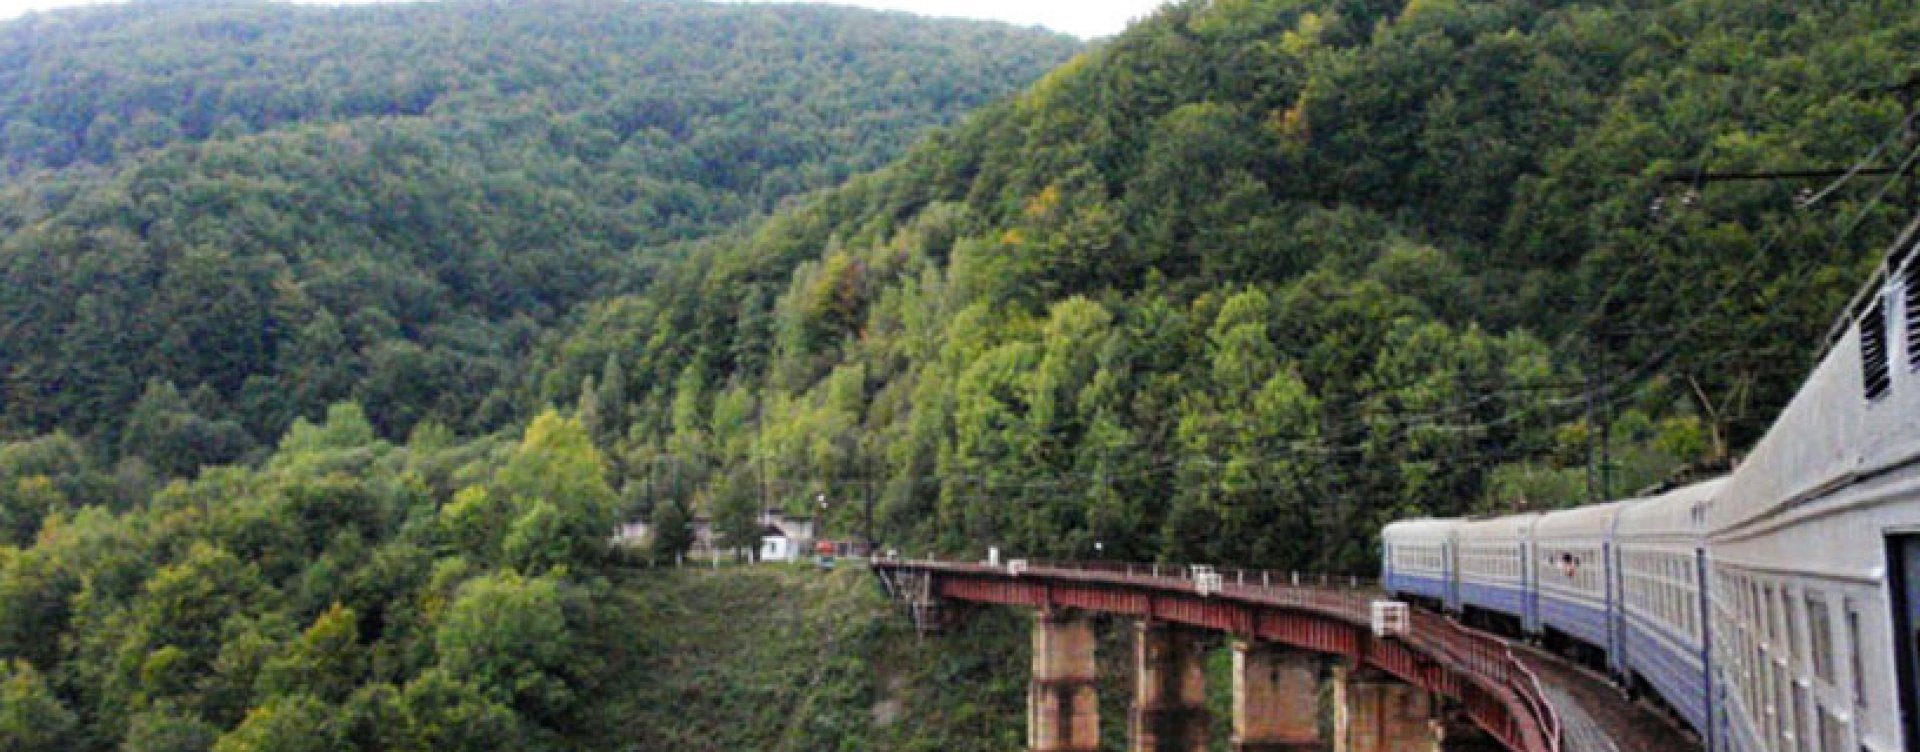 The narrow gauge railway in the Bieszczady mountains